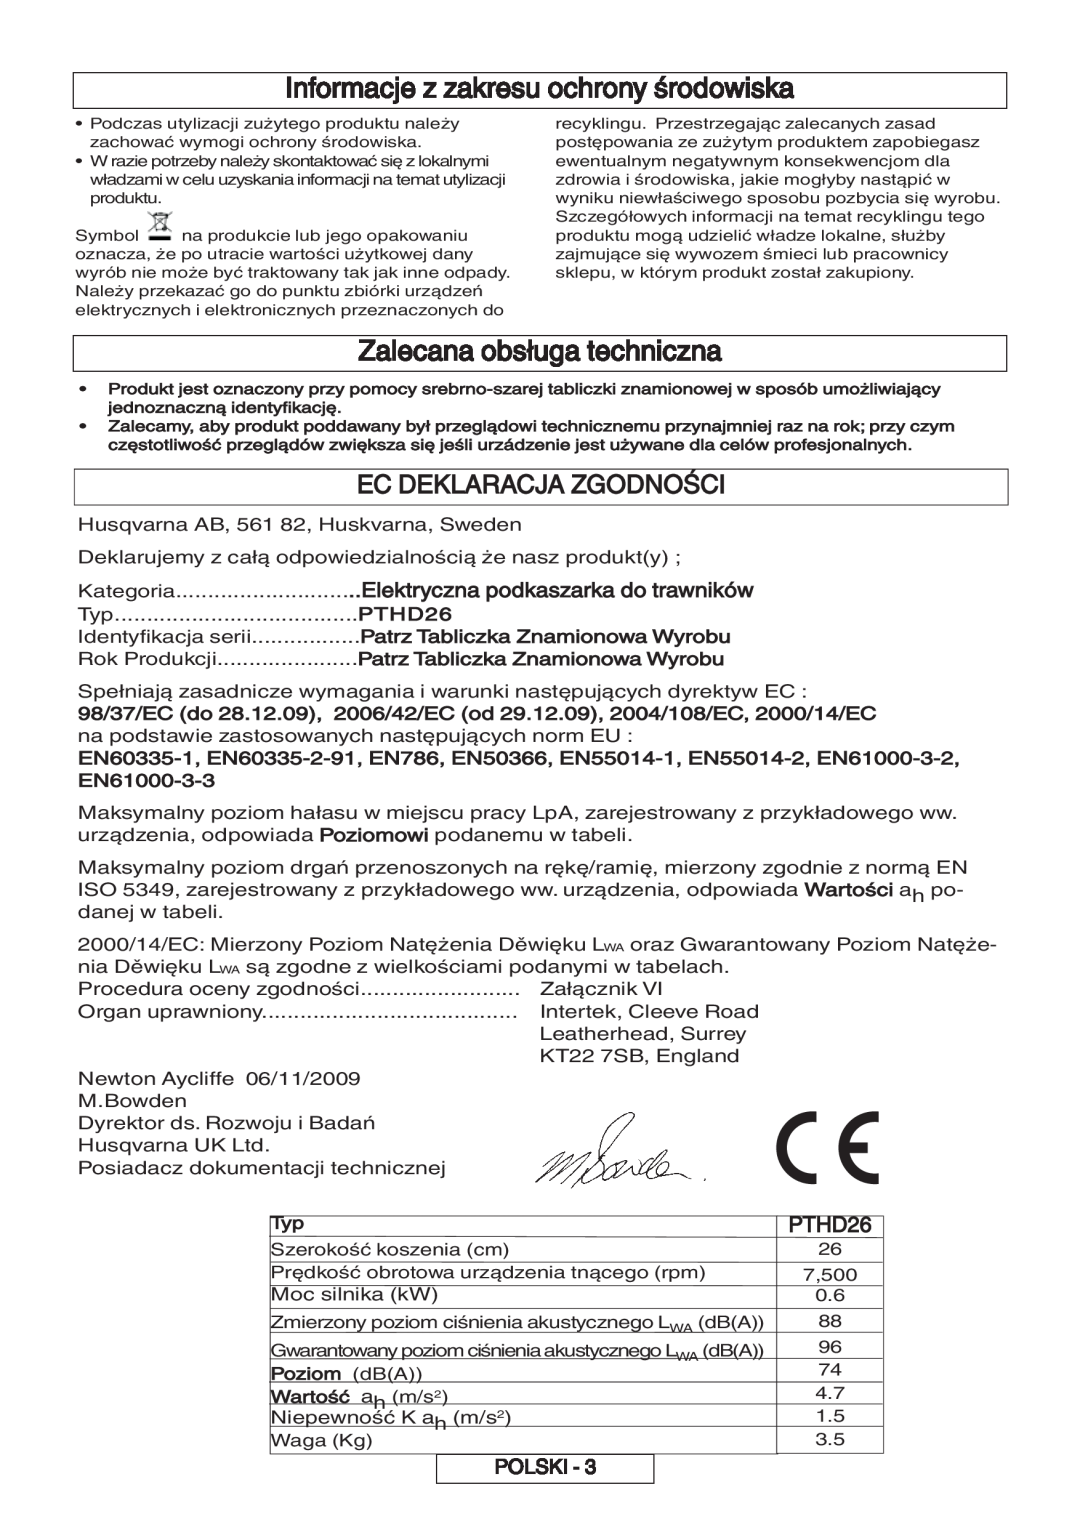 Flymo 600 HD Informacje z zakresu ochrony środowiska, Zalecana obsługa techniczna, Ec Deklaracja Zgodności, PTHD26, Polski 